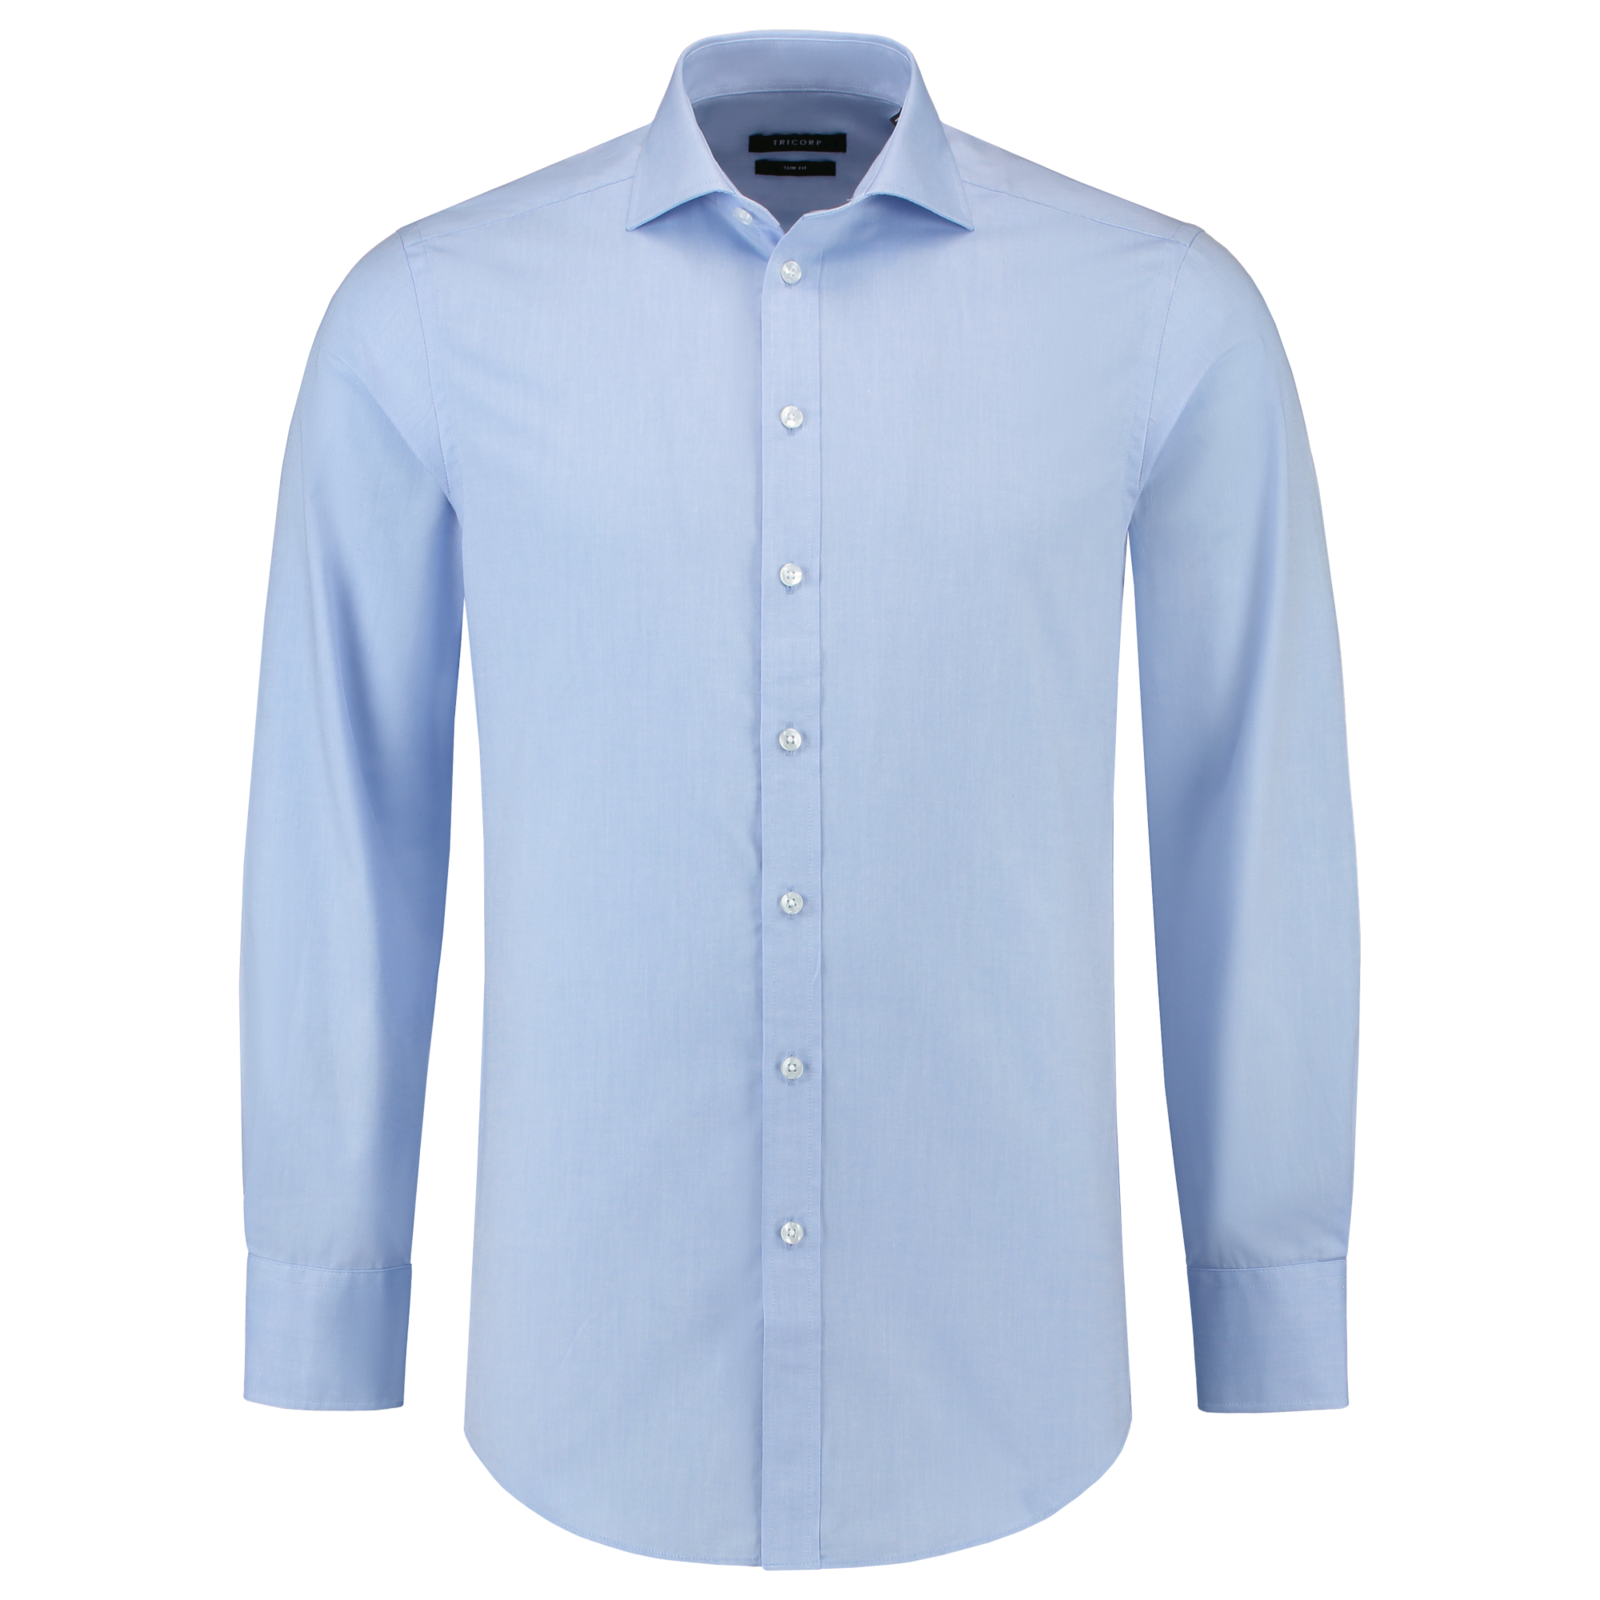 Pánska košeľa s dlhým rukávom Tricorp Fitted T21 - veľkosť: 37, farba: svetlo modrá